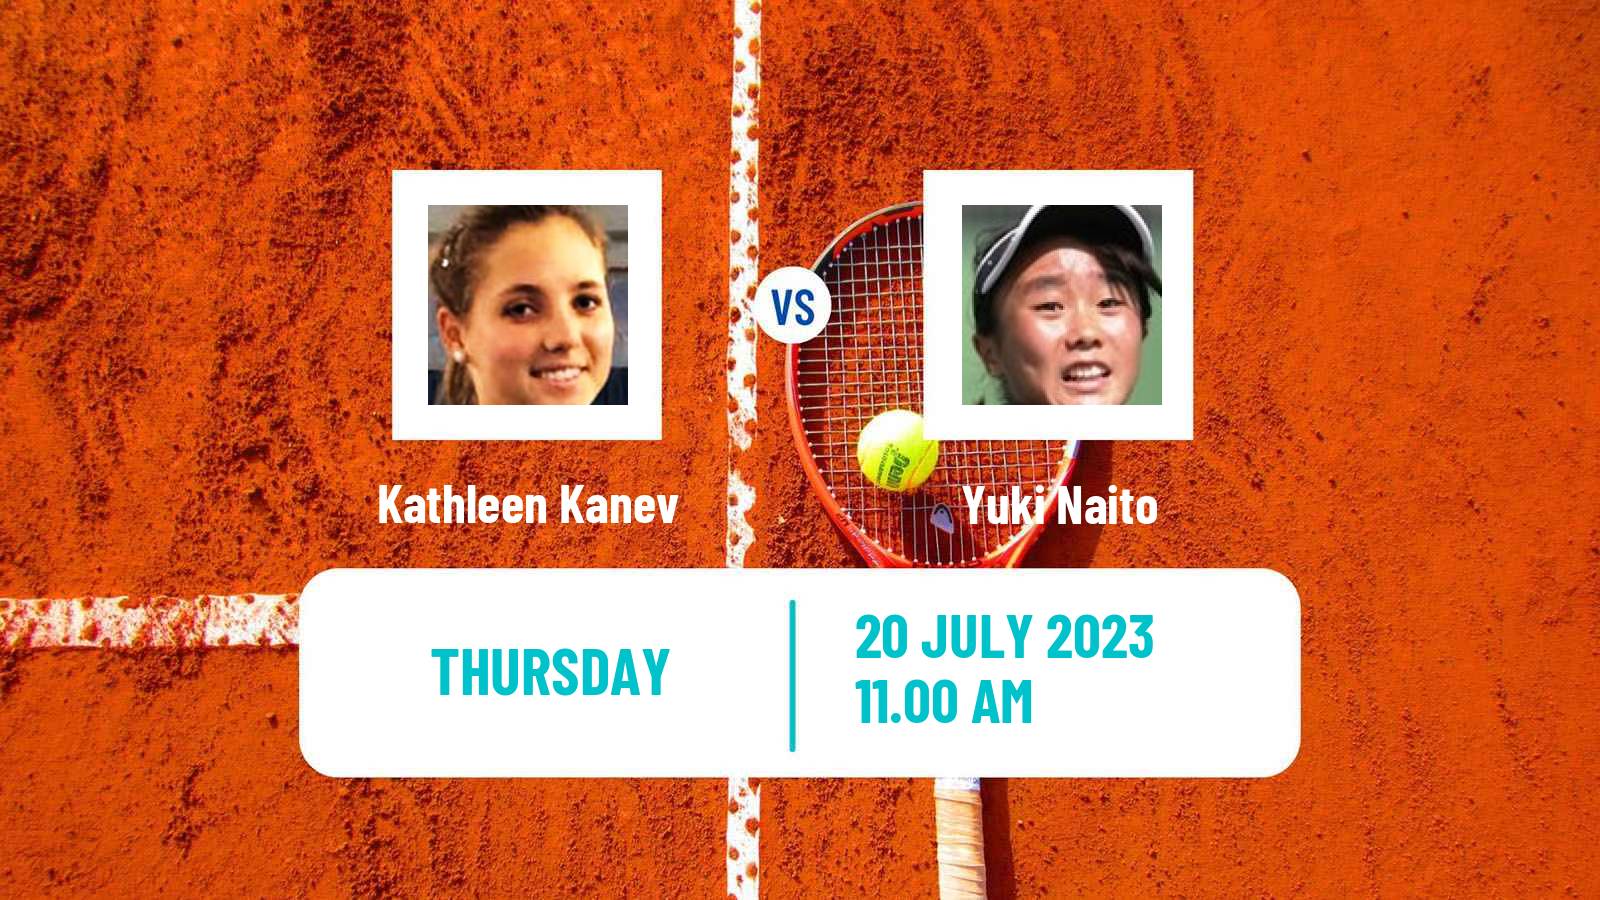 Tennis ITF W25 Darmstadt Women Kathleen Kanev - Yuki Naito